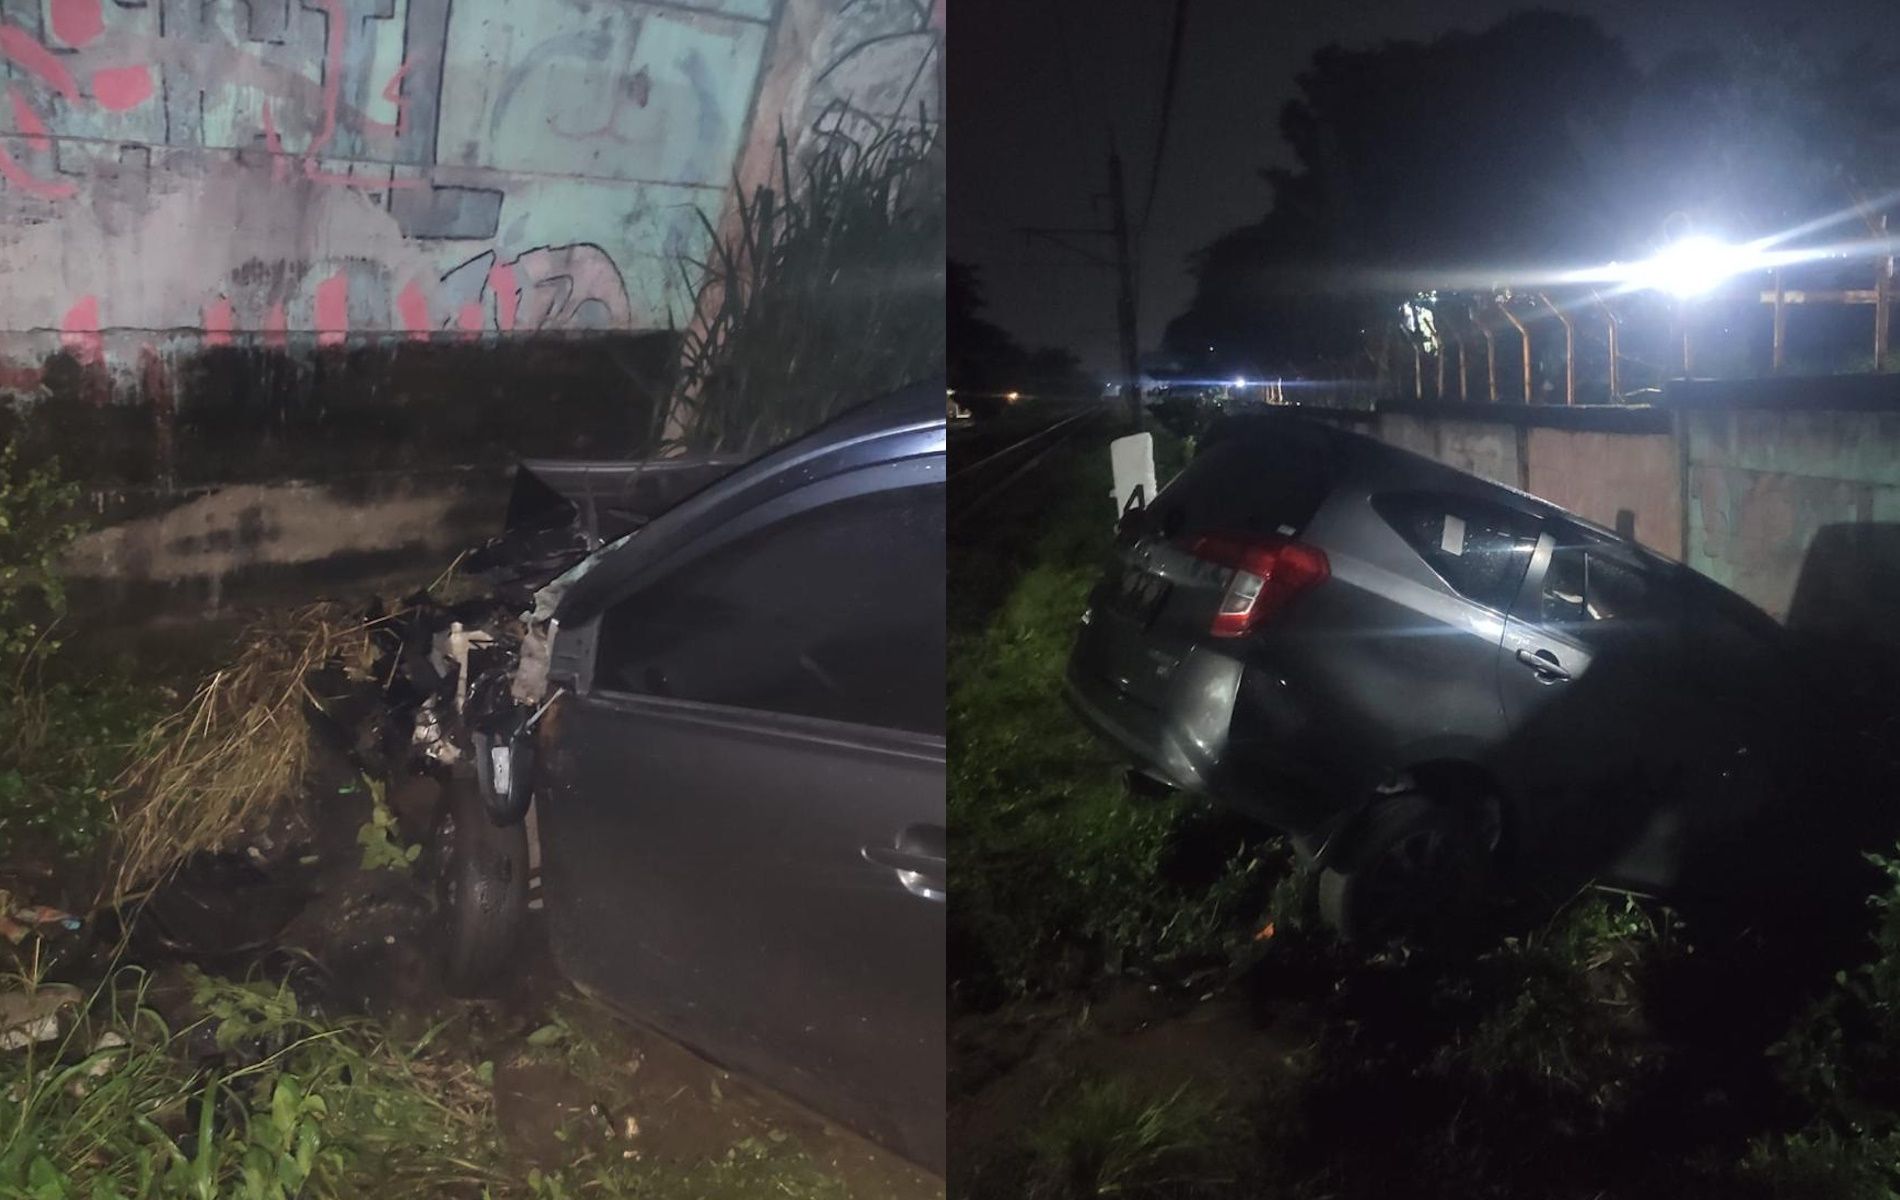 Mobil Daihatsu Sigra bernopol B 2982 TRY tertabrak KRL Commuter Line rute Jakarta-Nambo. Tampak kondisi mobil rusak di bagian depannya.